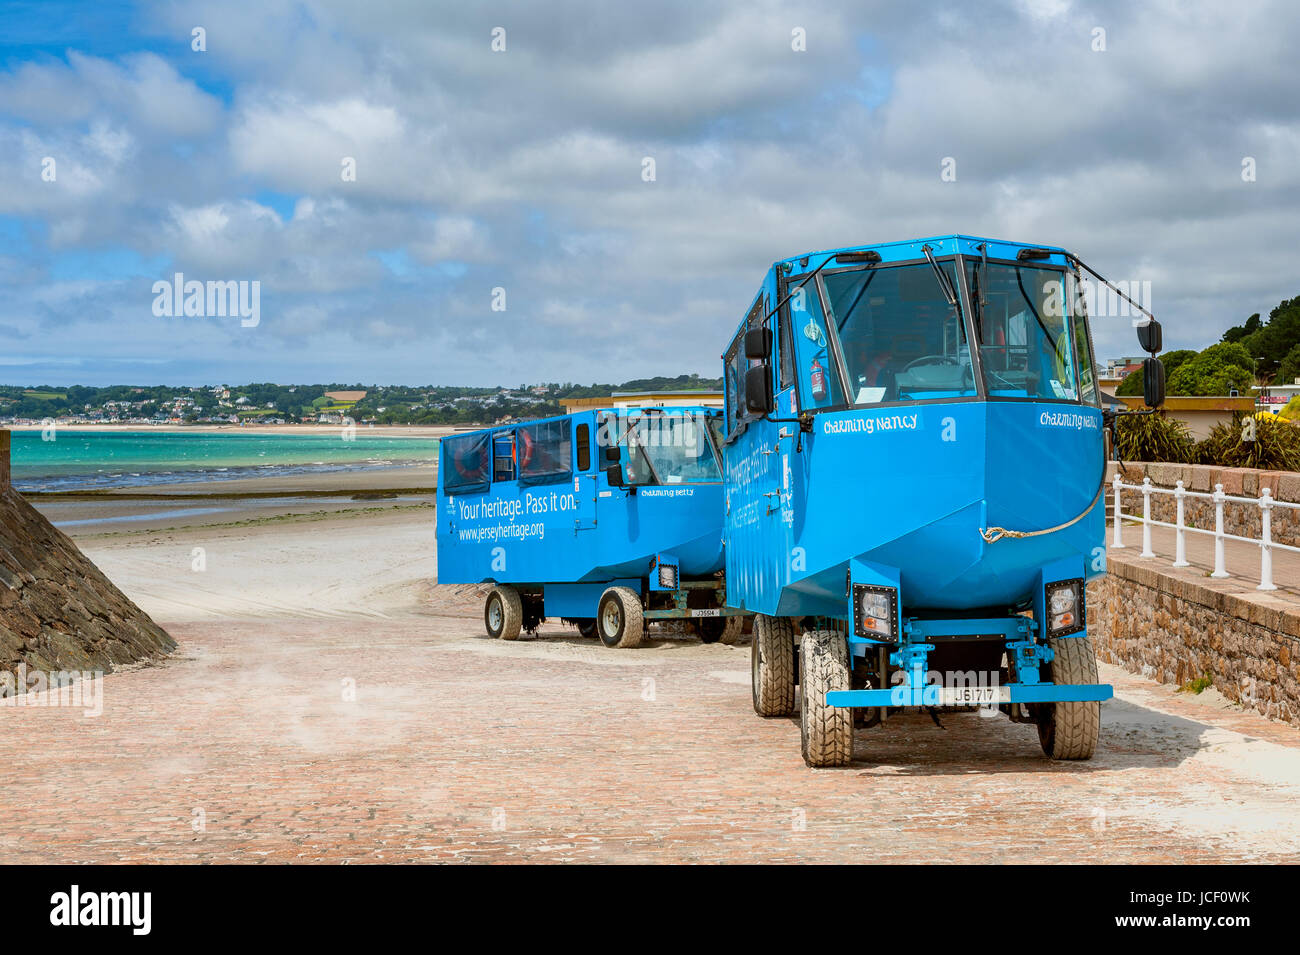 Vehículos Anfibios en la playa de St Helier, Jersey, Reino Unido. Se utilizan para el transporte de turistas a Elizabeth castillo justo fuera de la costa Foto de stock